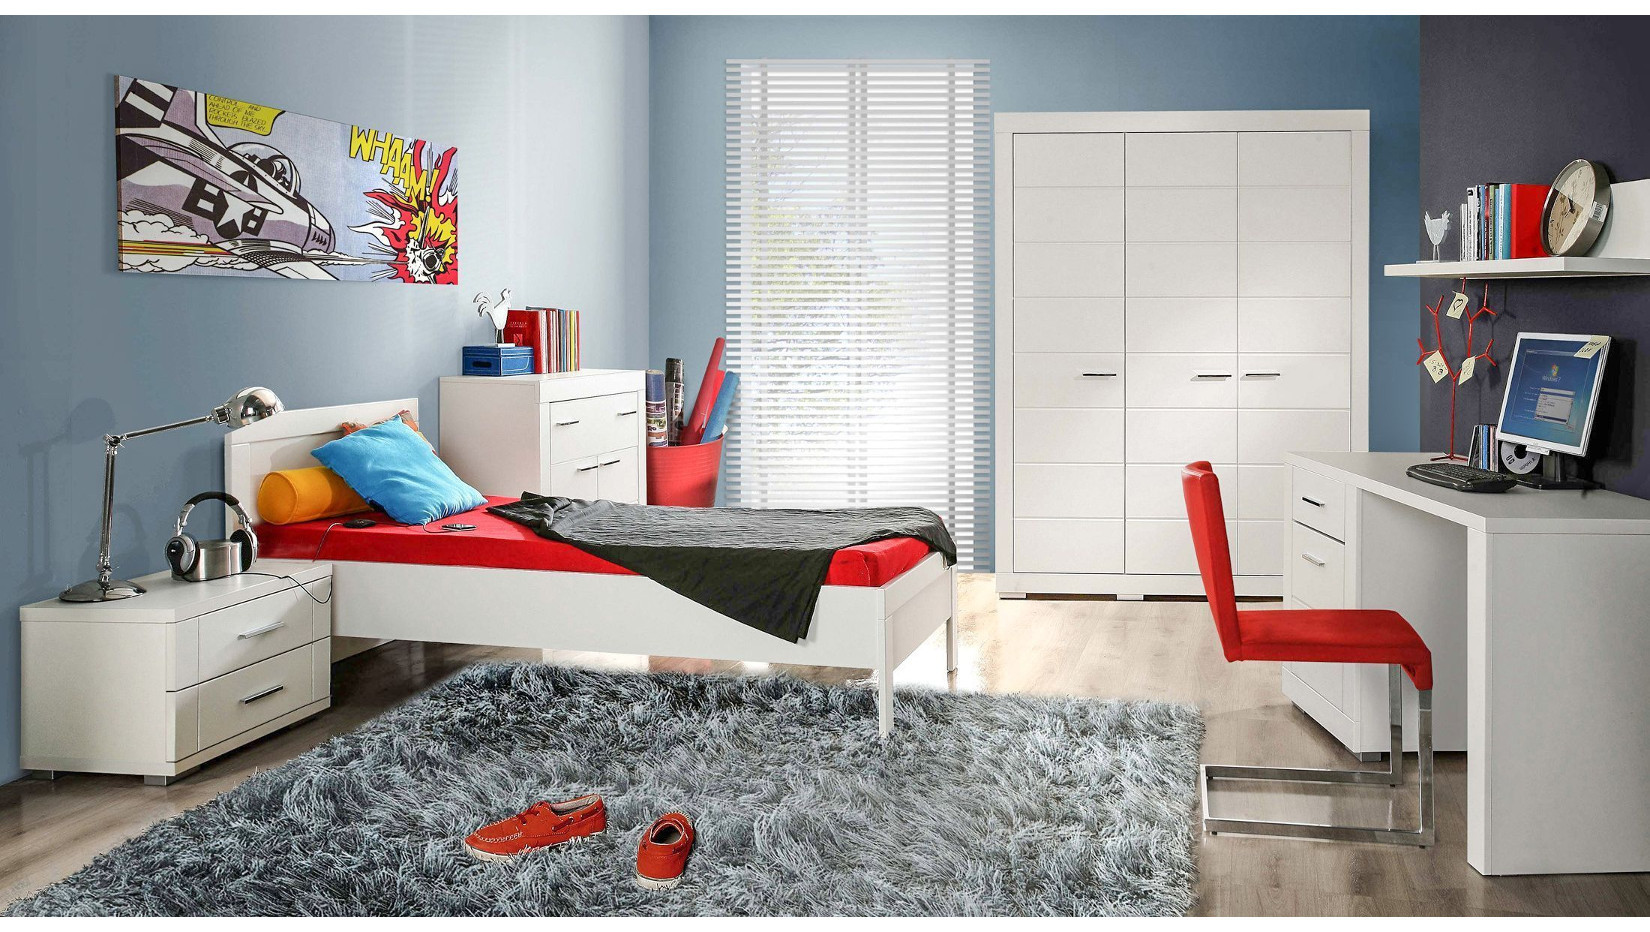 Системы мебели для подростков наверняка проявят себя в комнате для подростков, из которой отдельные элементы образуют единое, связное и эстетическое целое